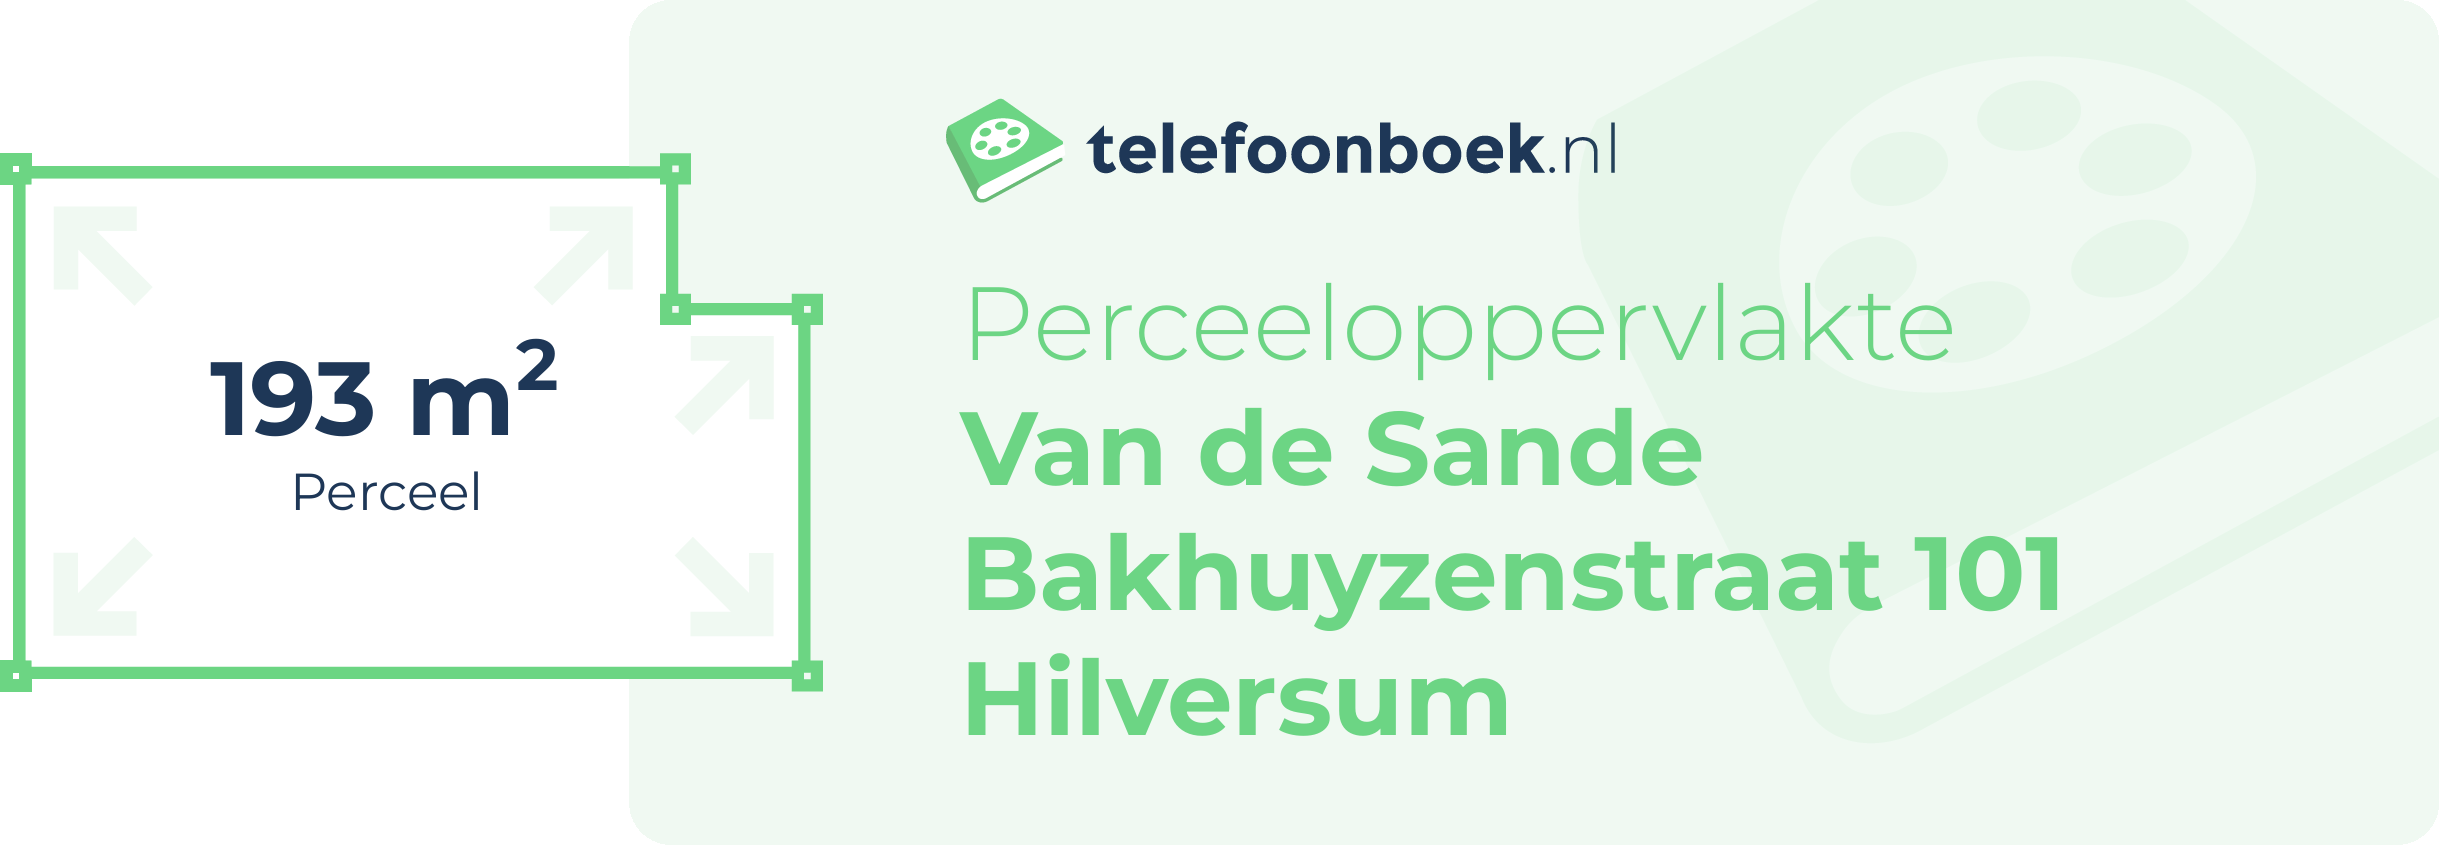 Perceeloppervlakte Van De Sande Bakhuyzenstraat 101 Hilversum